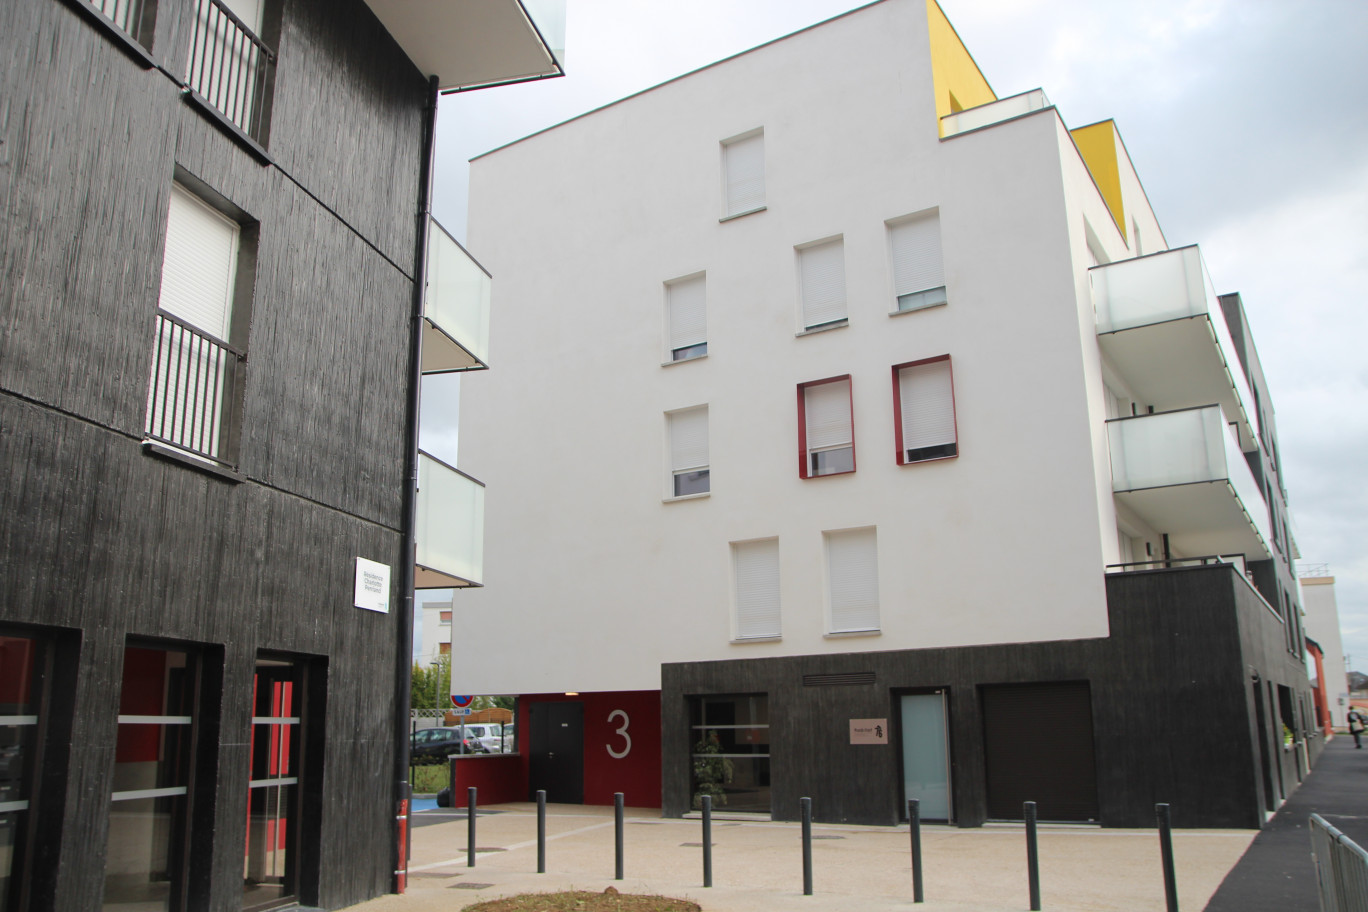 © Aletheia Press /
B.Delabre La résidence Charlotte Perriand à Sotteville-lès-Rouen, fraîchement inaugurée par Habitat 76 